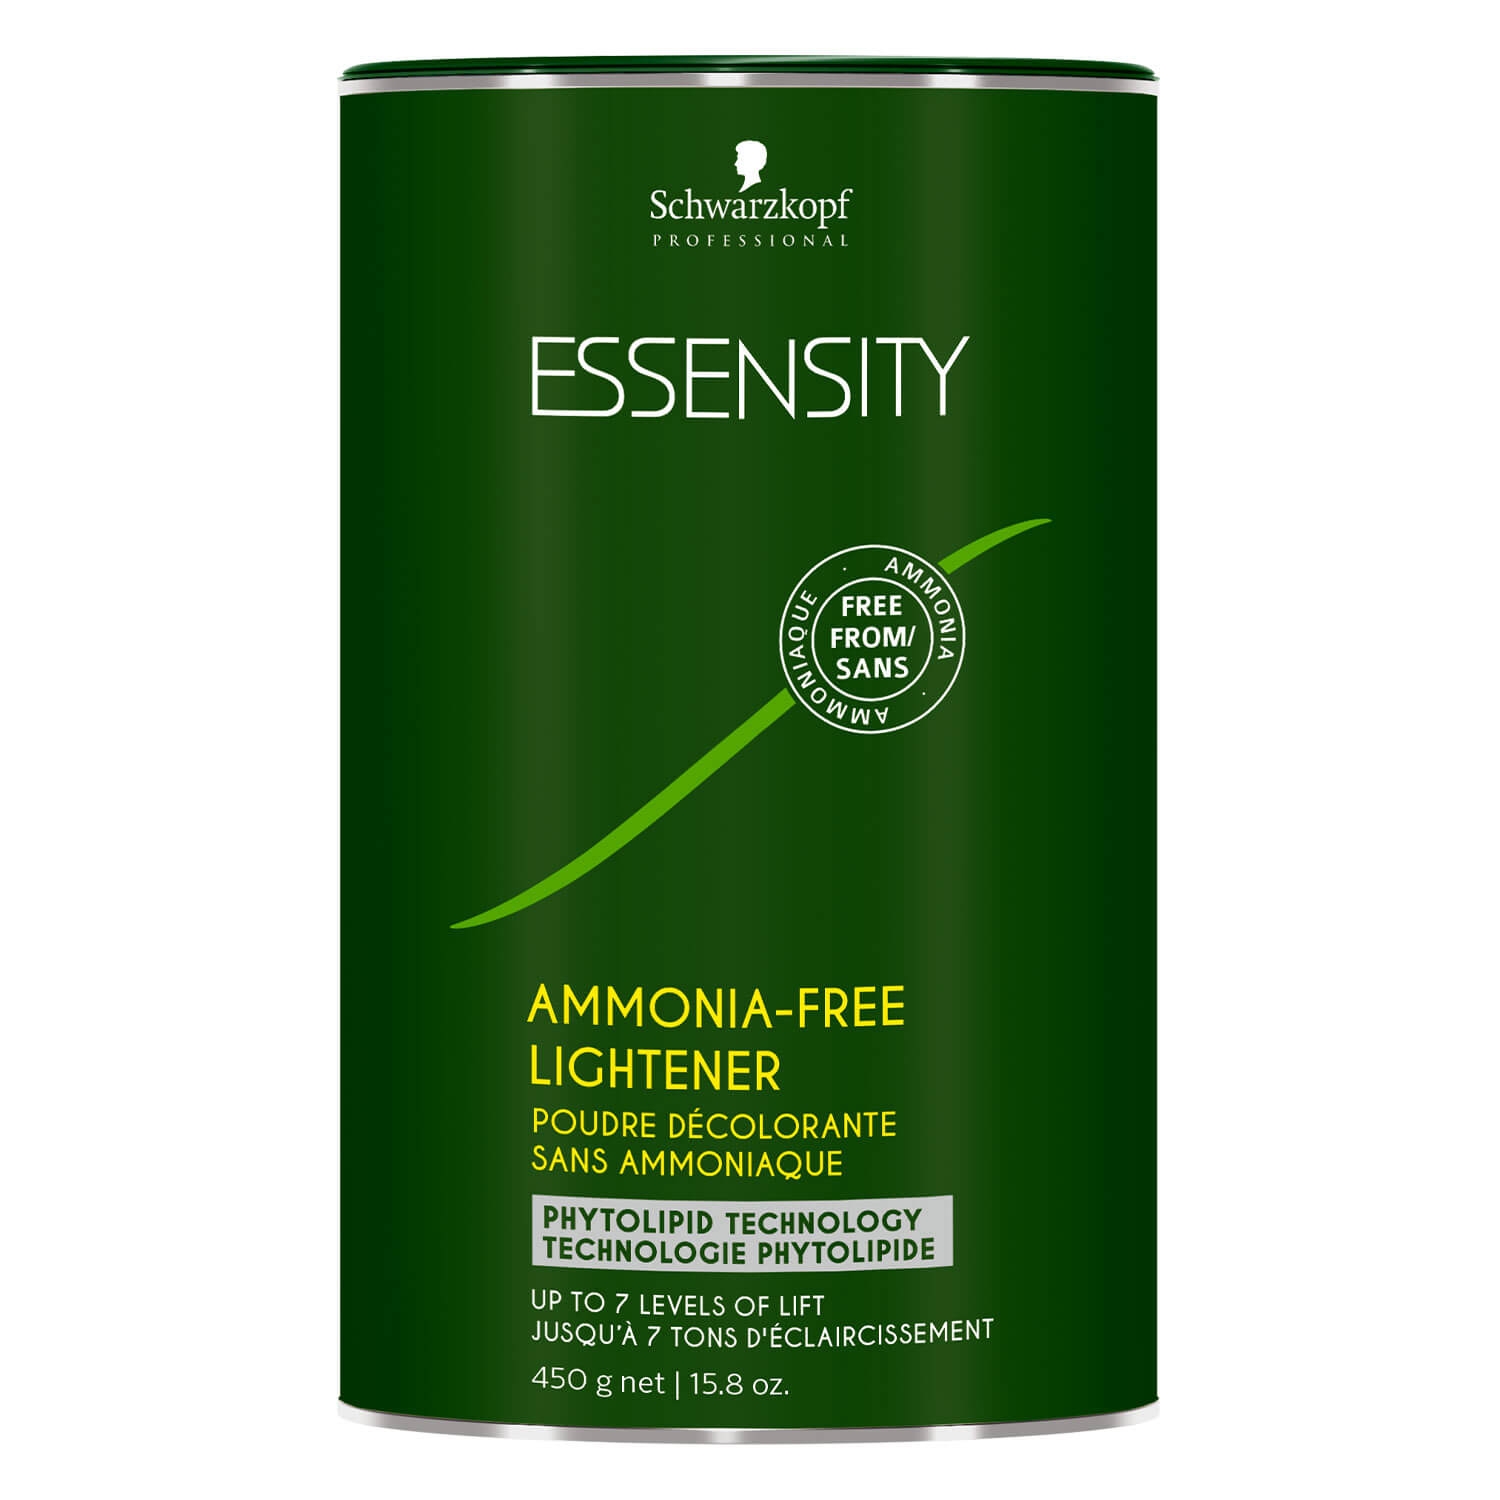 Produktbild von Essensity - Ammonia-Free Lightener